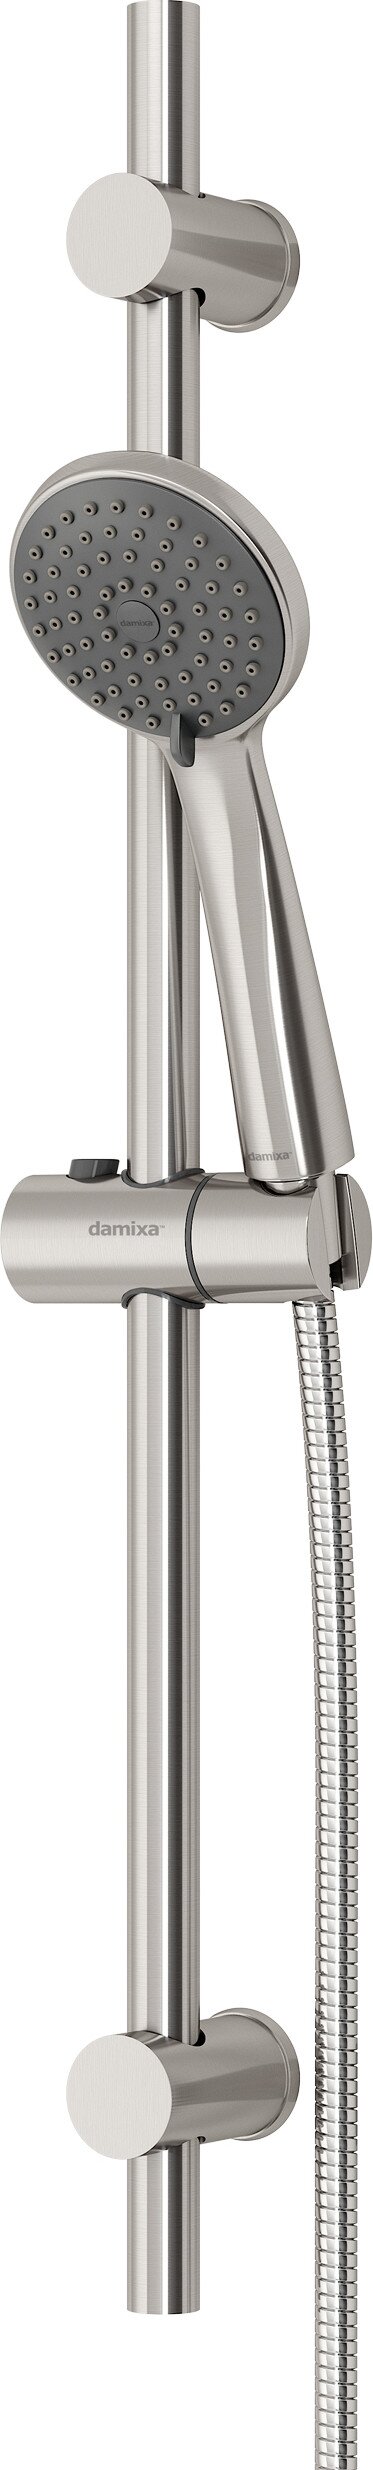 Душевой набор Damixa Origin Line 917600000 в интернет-магазине, главное фото